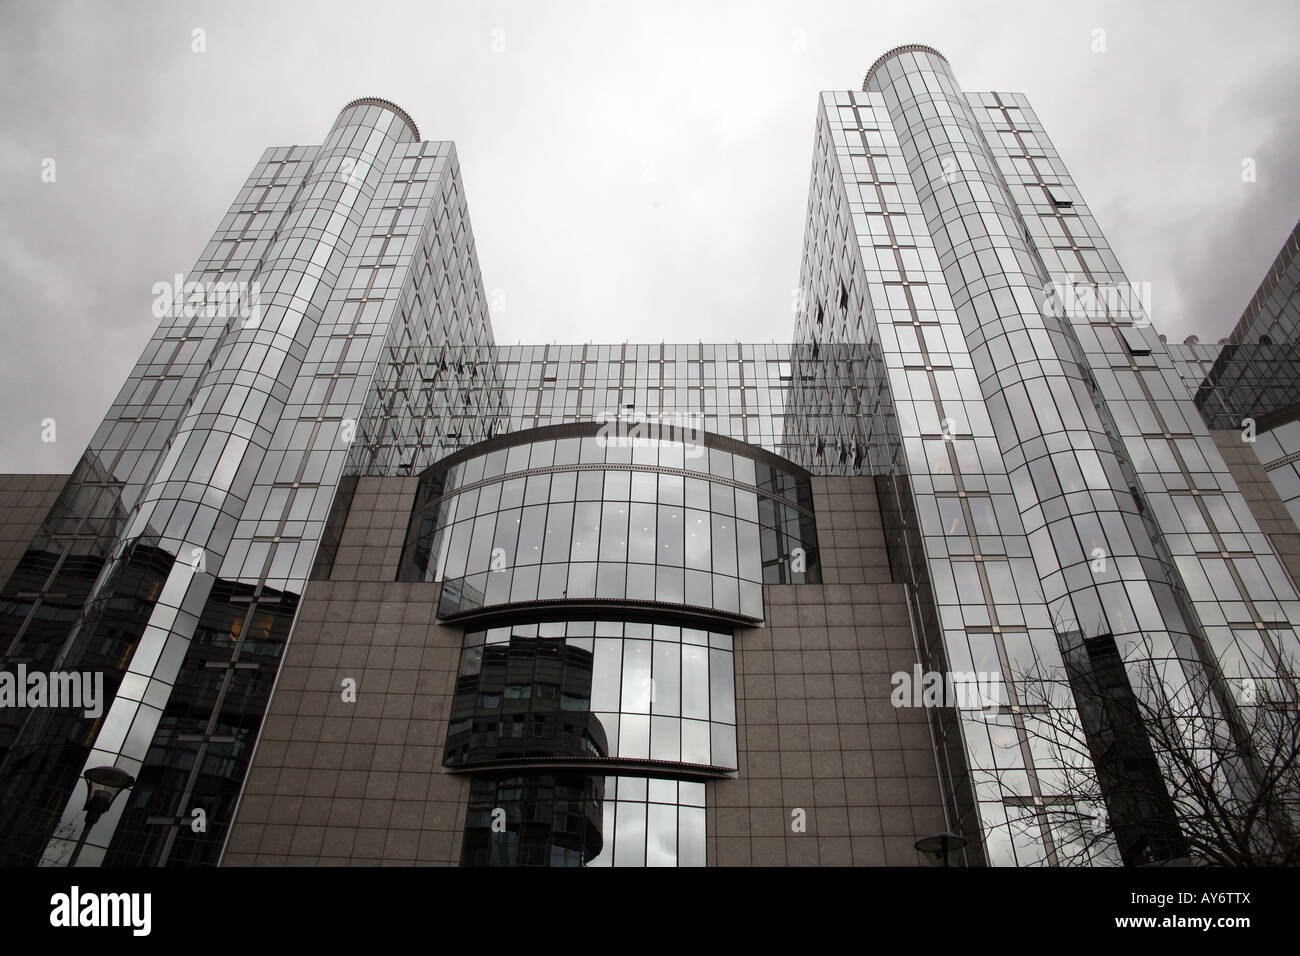 Teil der Gebäude des Europäischen Parlaments in Brüssel Stockfoto